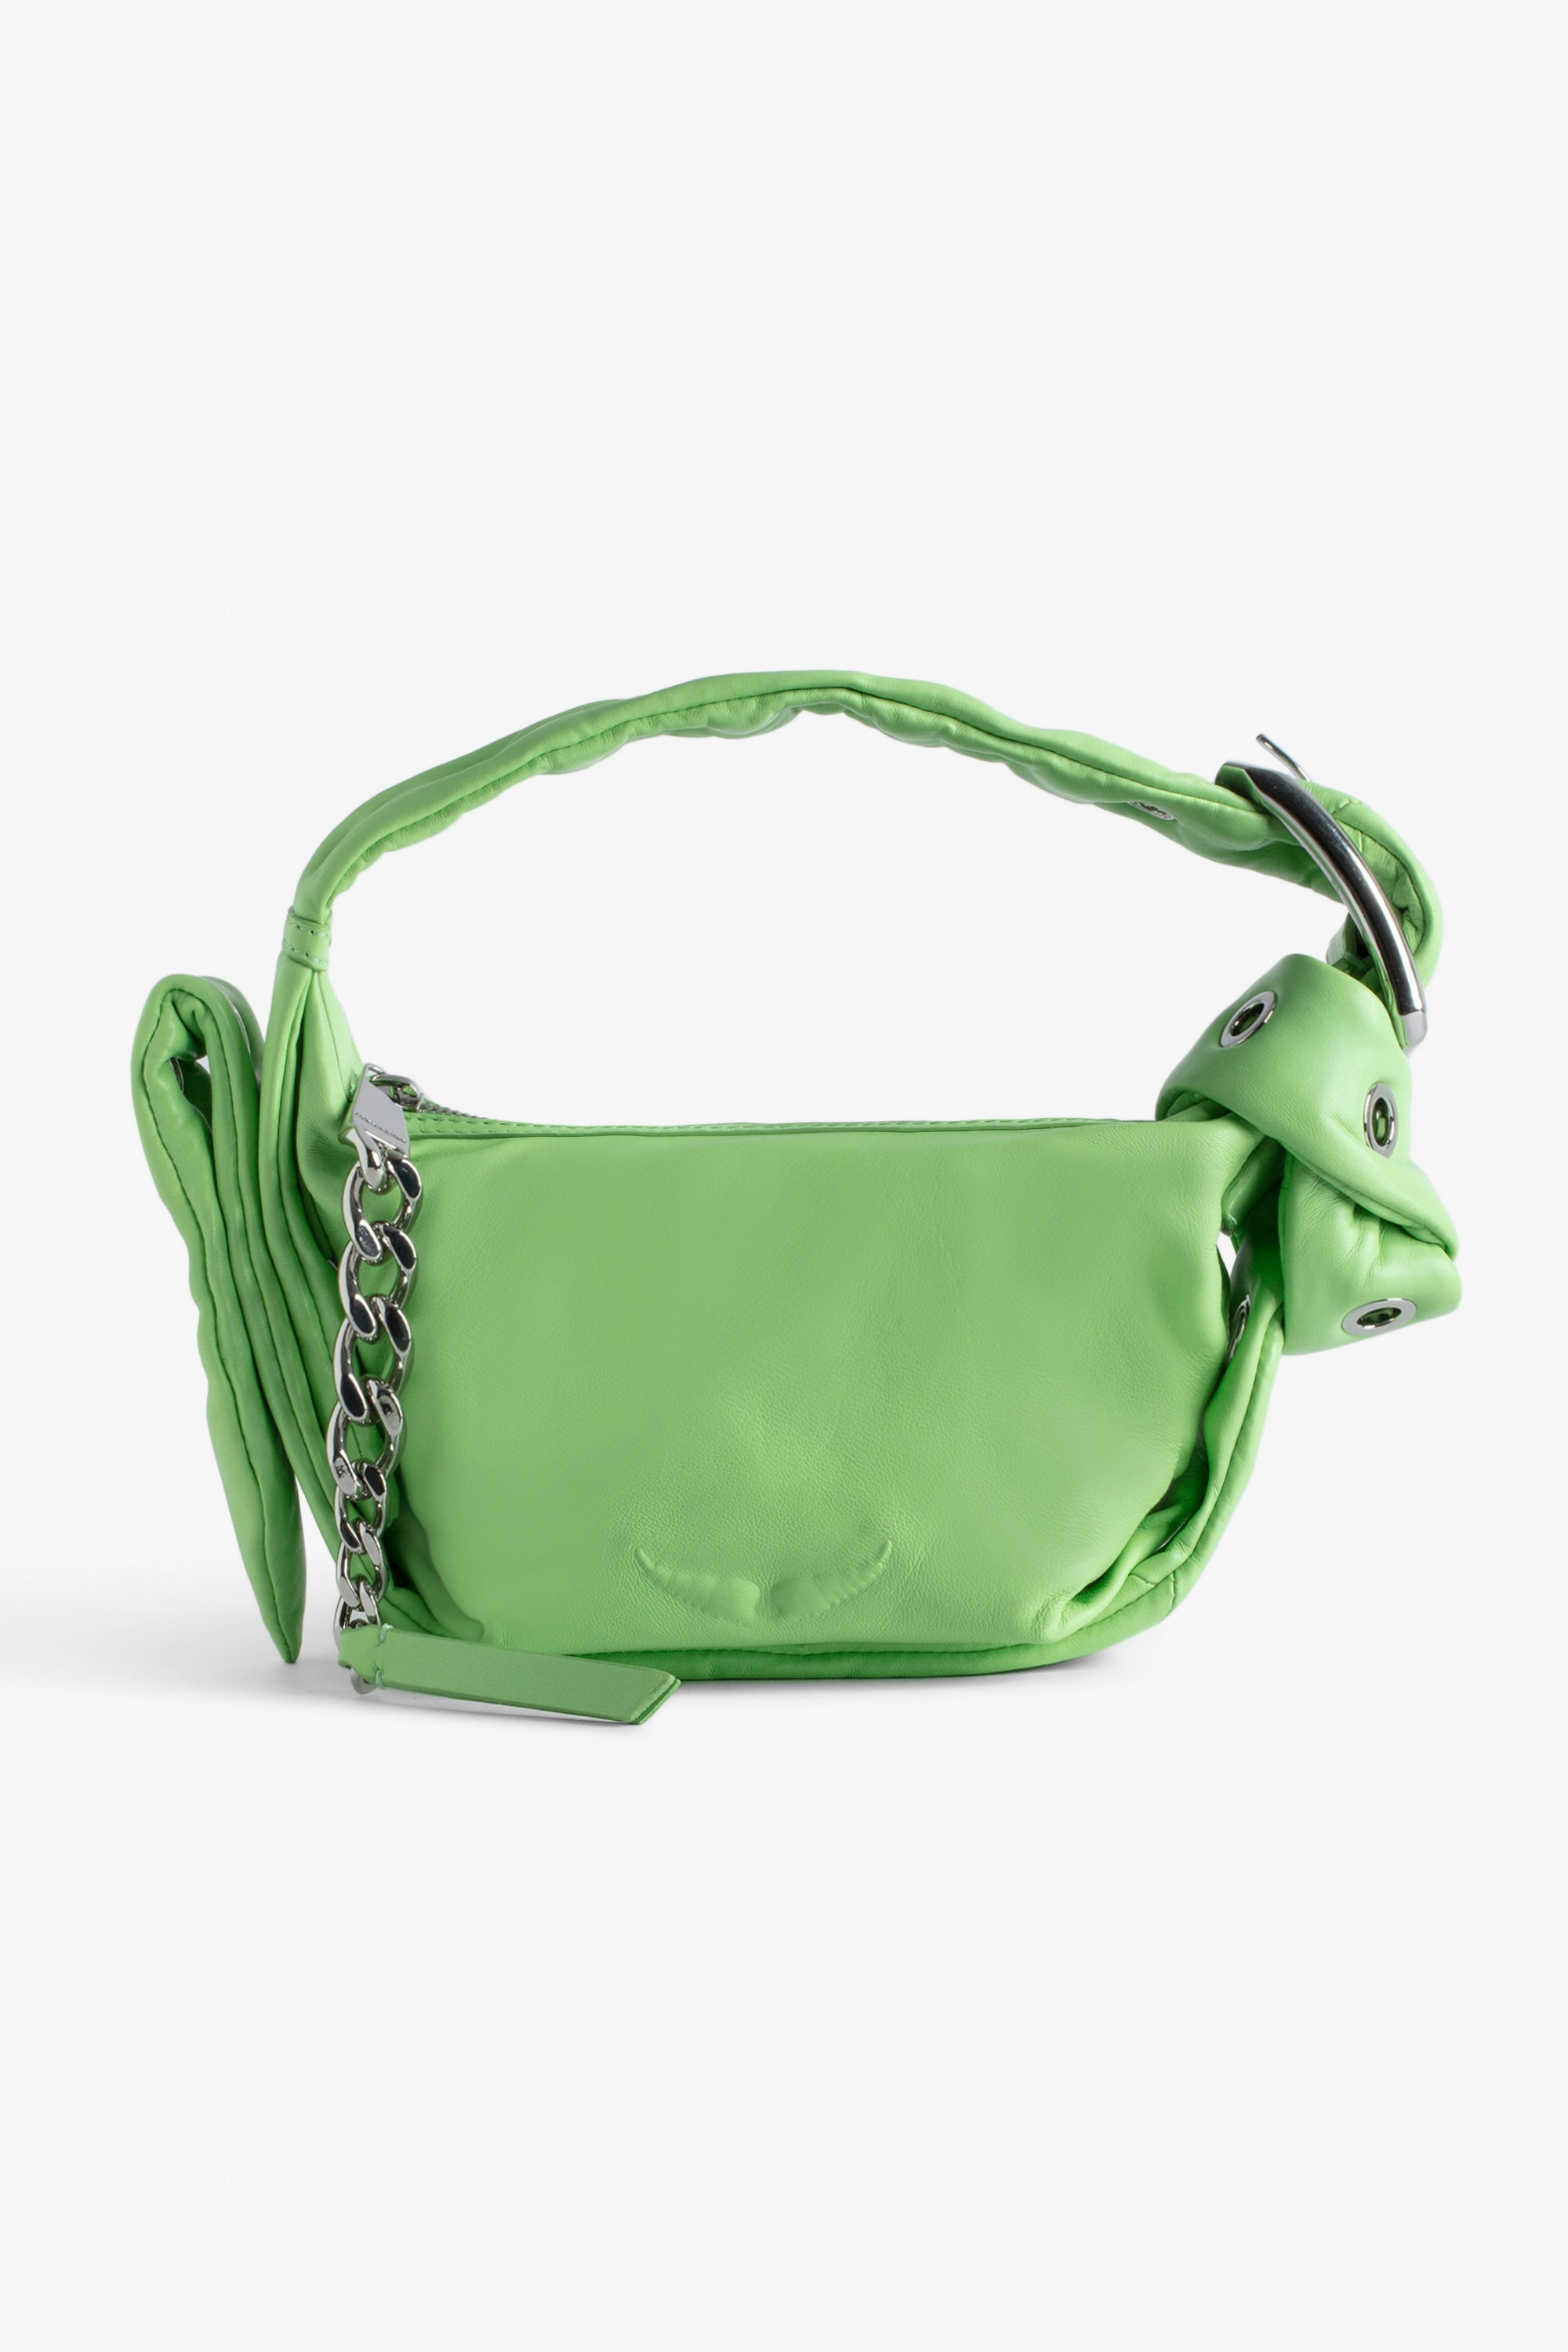 Sac Le Cecilia XS Obsession  Petit sac en cuir lisse vert à bandoulière et boucle métallique C femme.